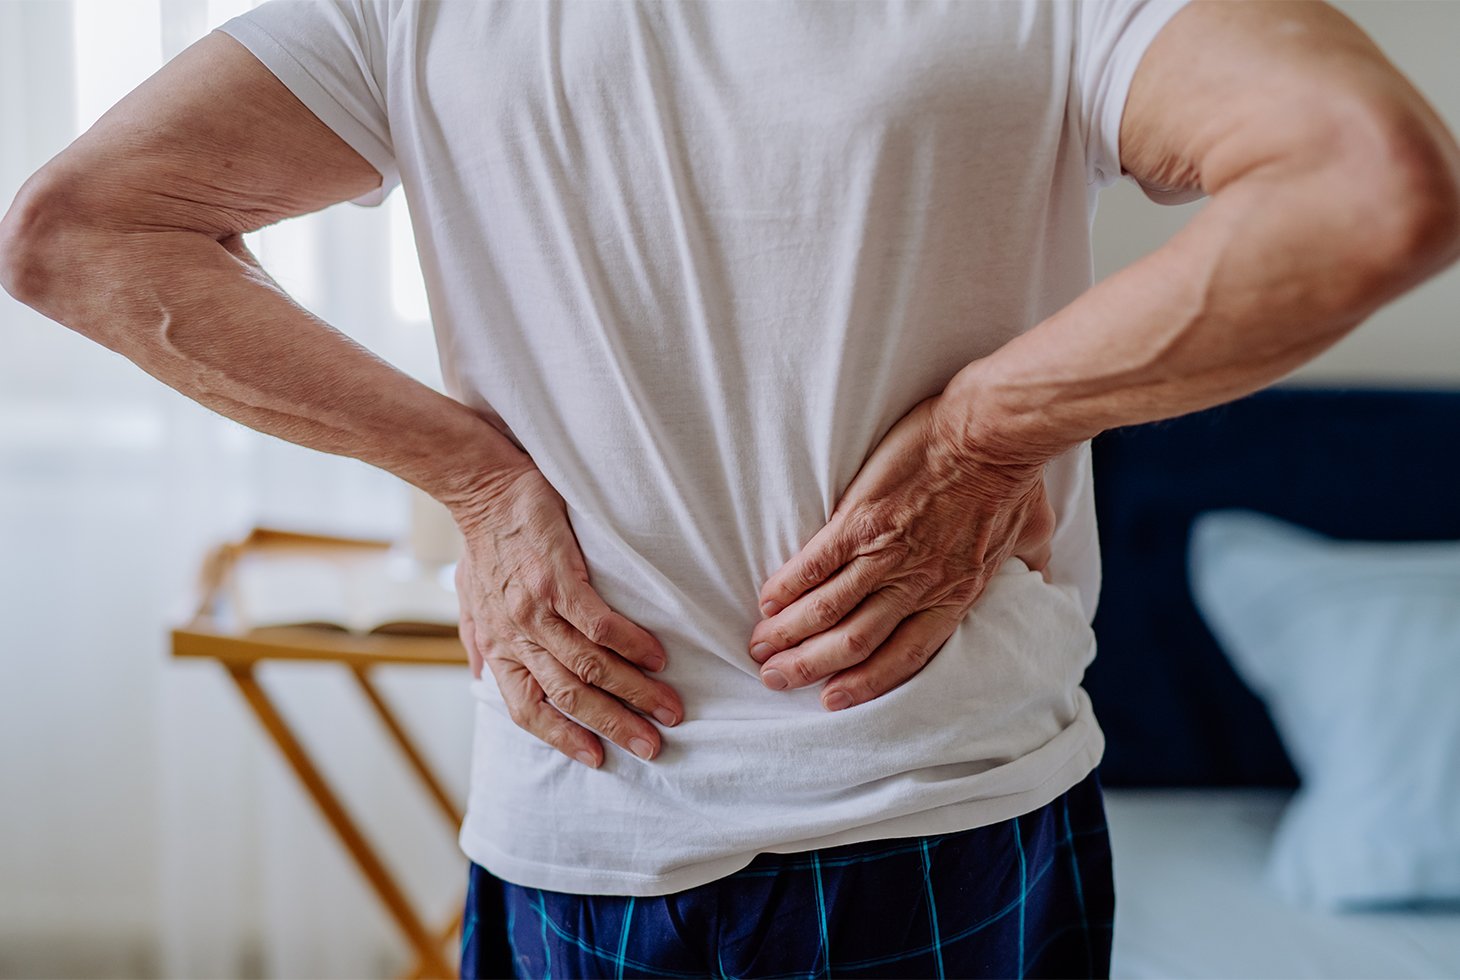 Vue de dos d’un homme se tenant le bas du dos. Visuel pour illustrer le risque de troubles musculo-squelettiques chez les aidants.